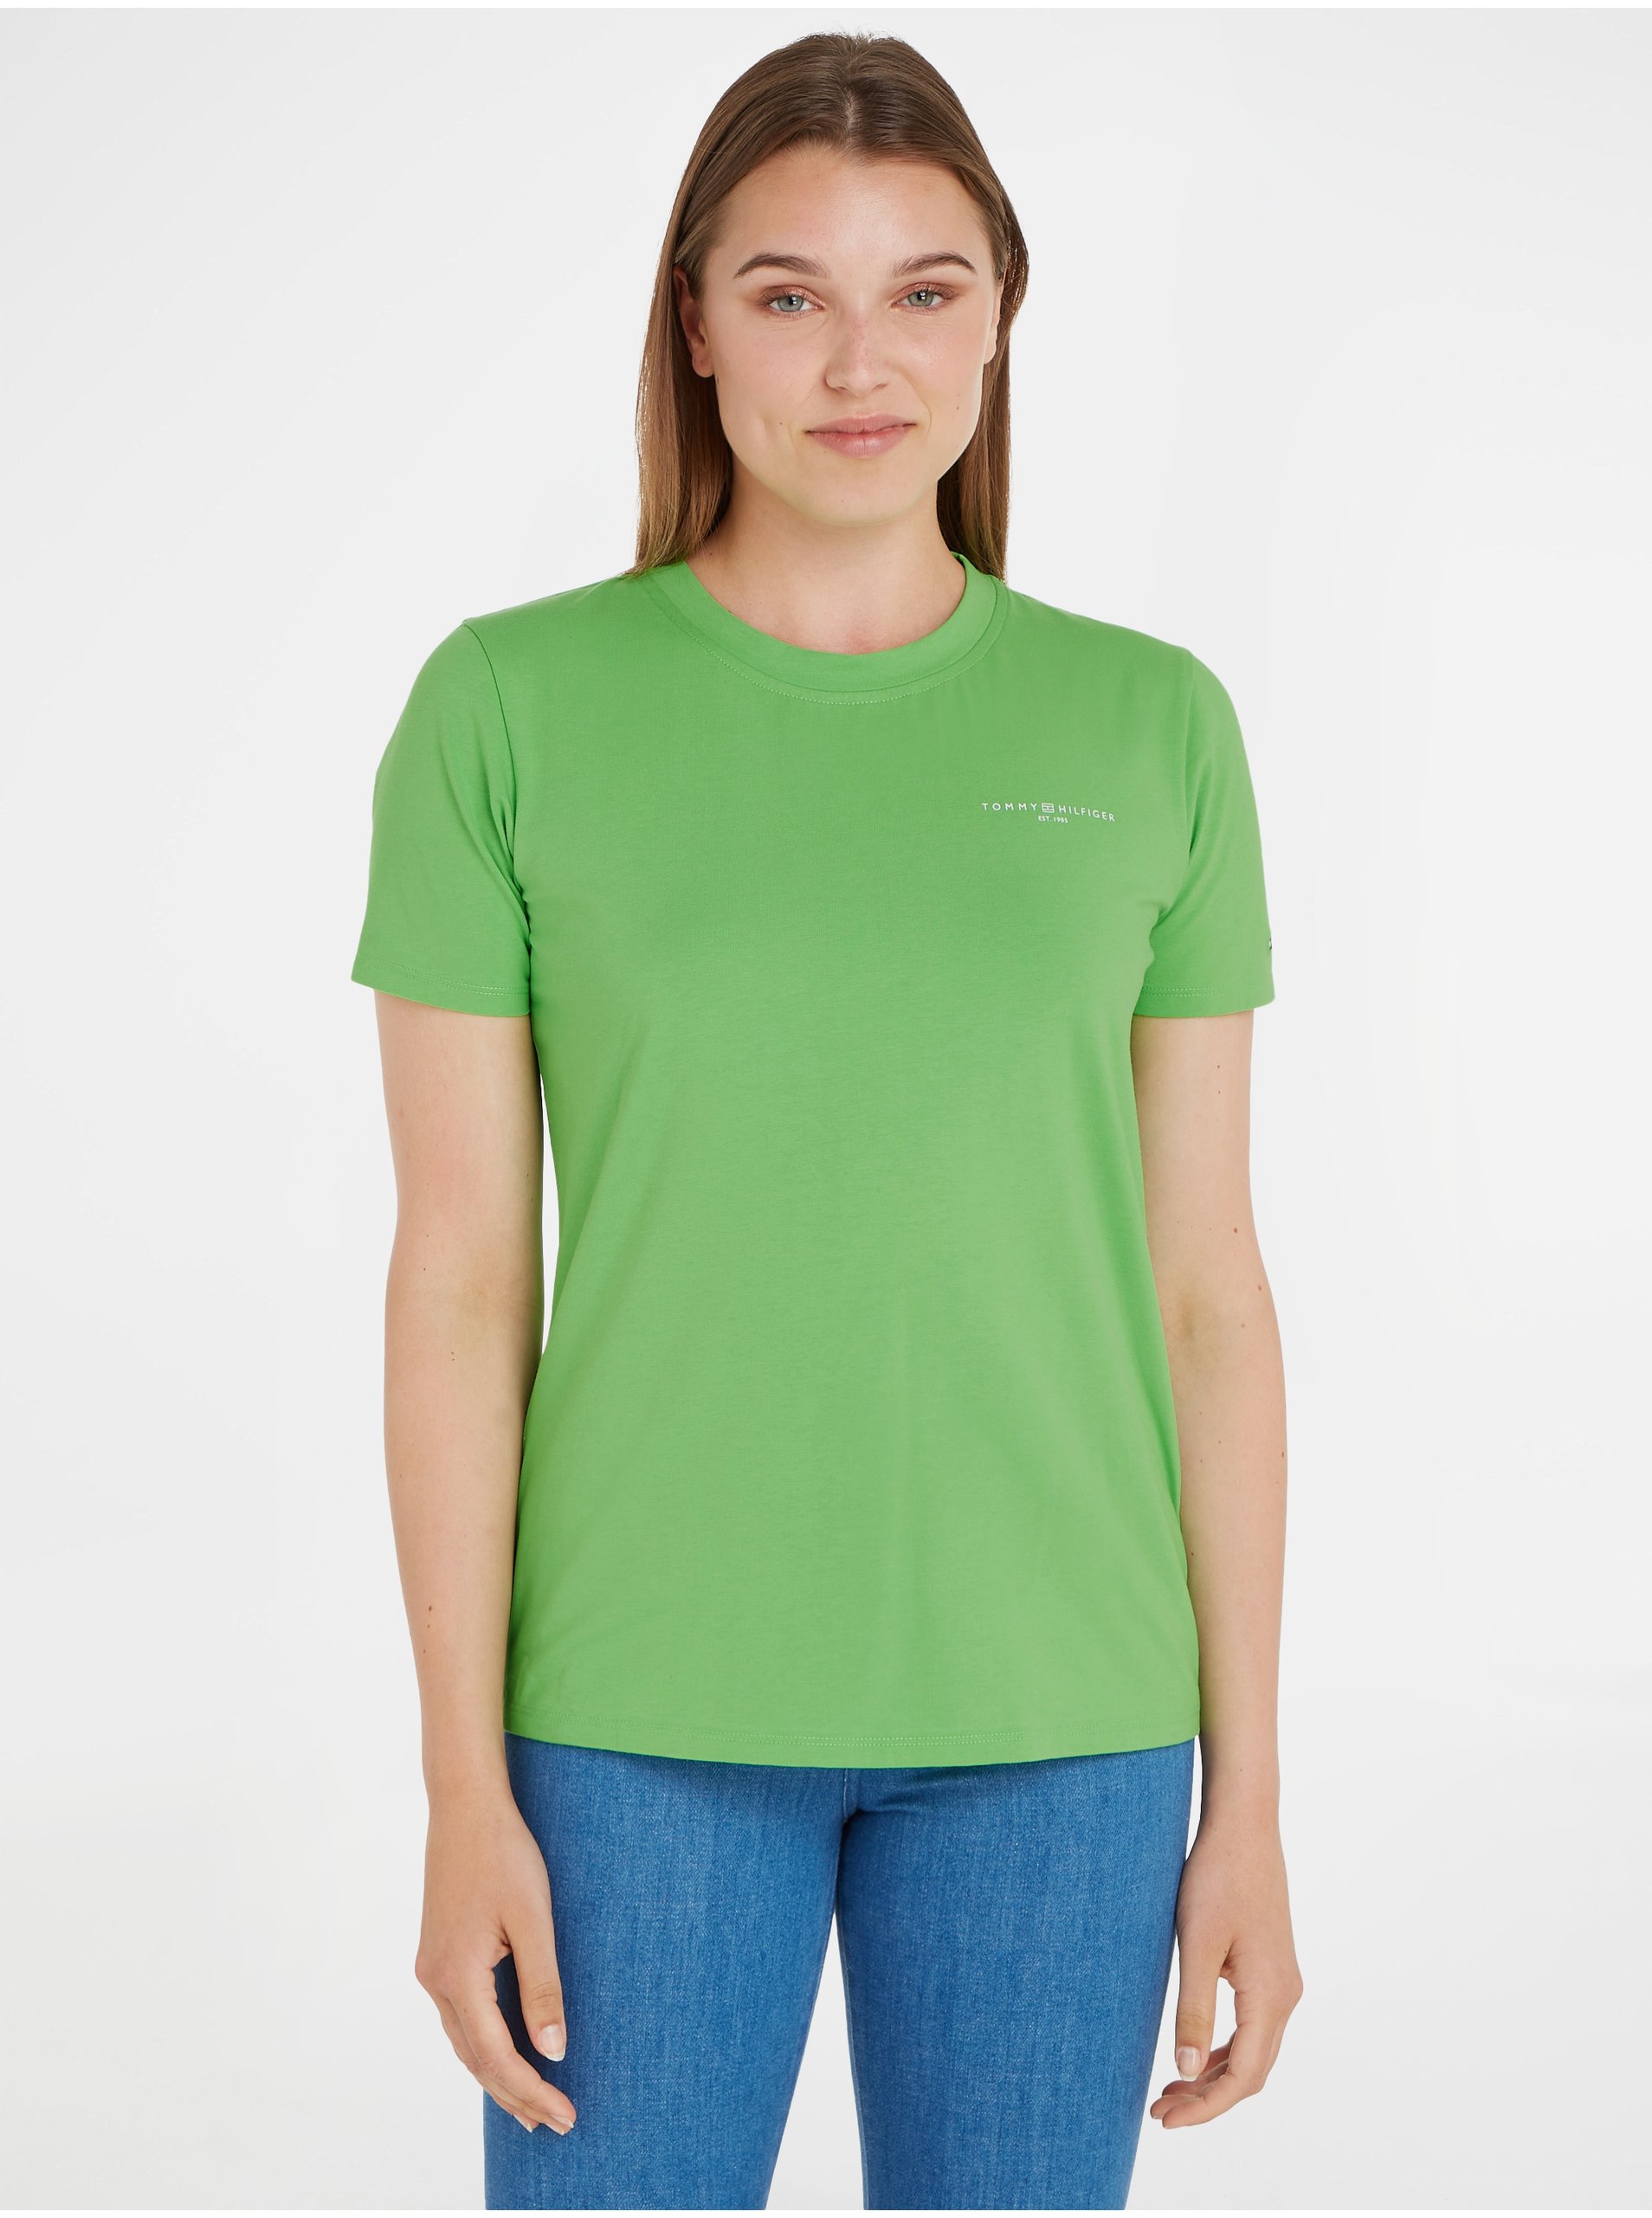 Lacno Svetlo zelené dámske tričko Tommy Hilfiger 1985